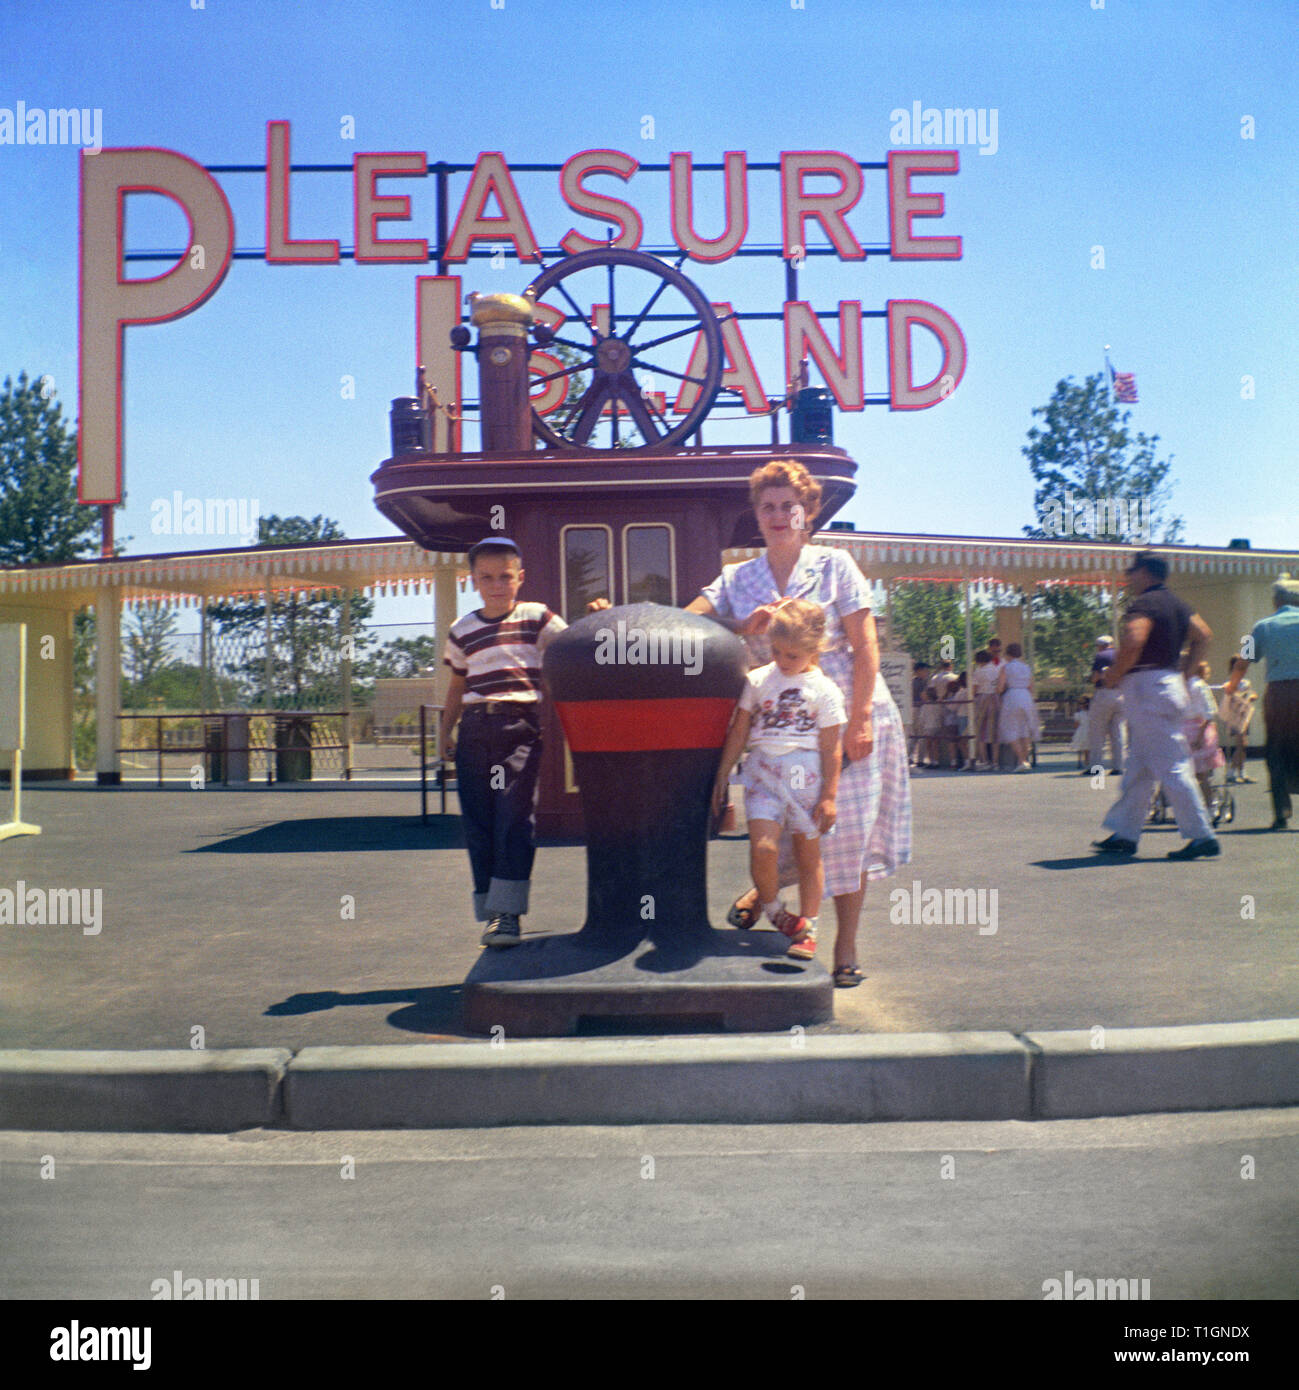 Entrée du parc d'attractions Pleasure Island, présenté comme le 'Disneyland' du nord-est avec la mère et deux enfants. Banque D'Images